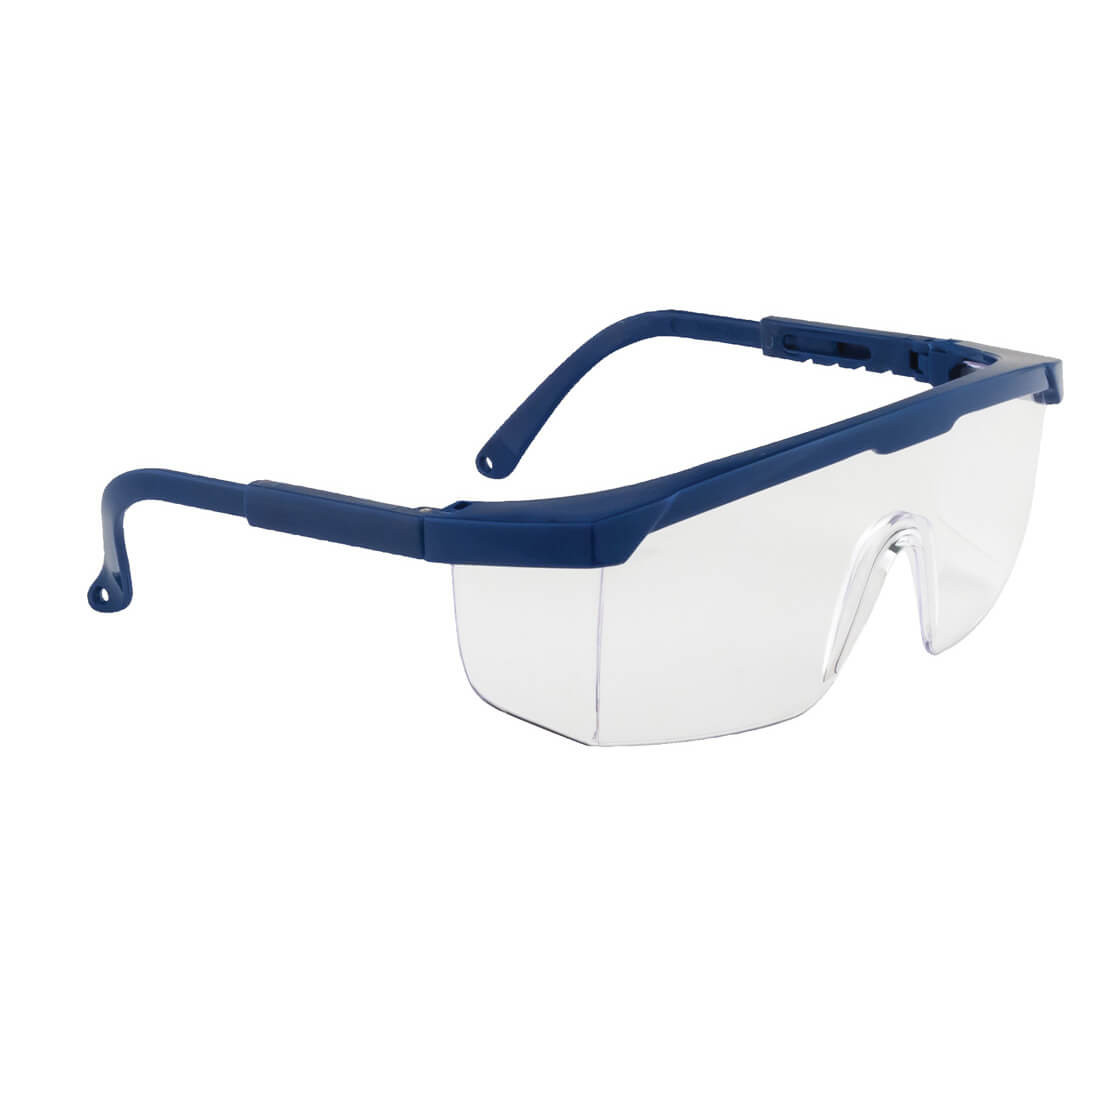 Gafas clásicas de pantalla - Equipamientos de protección personal